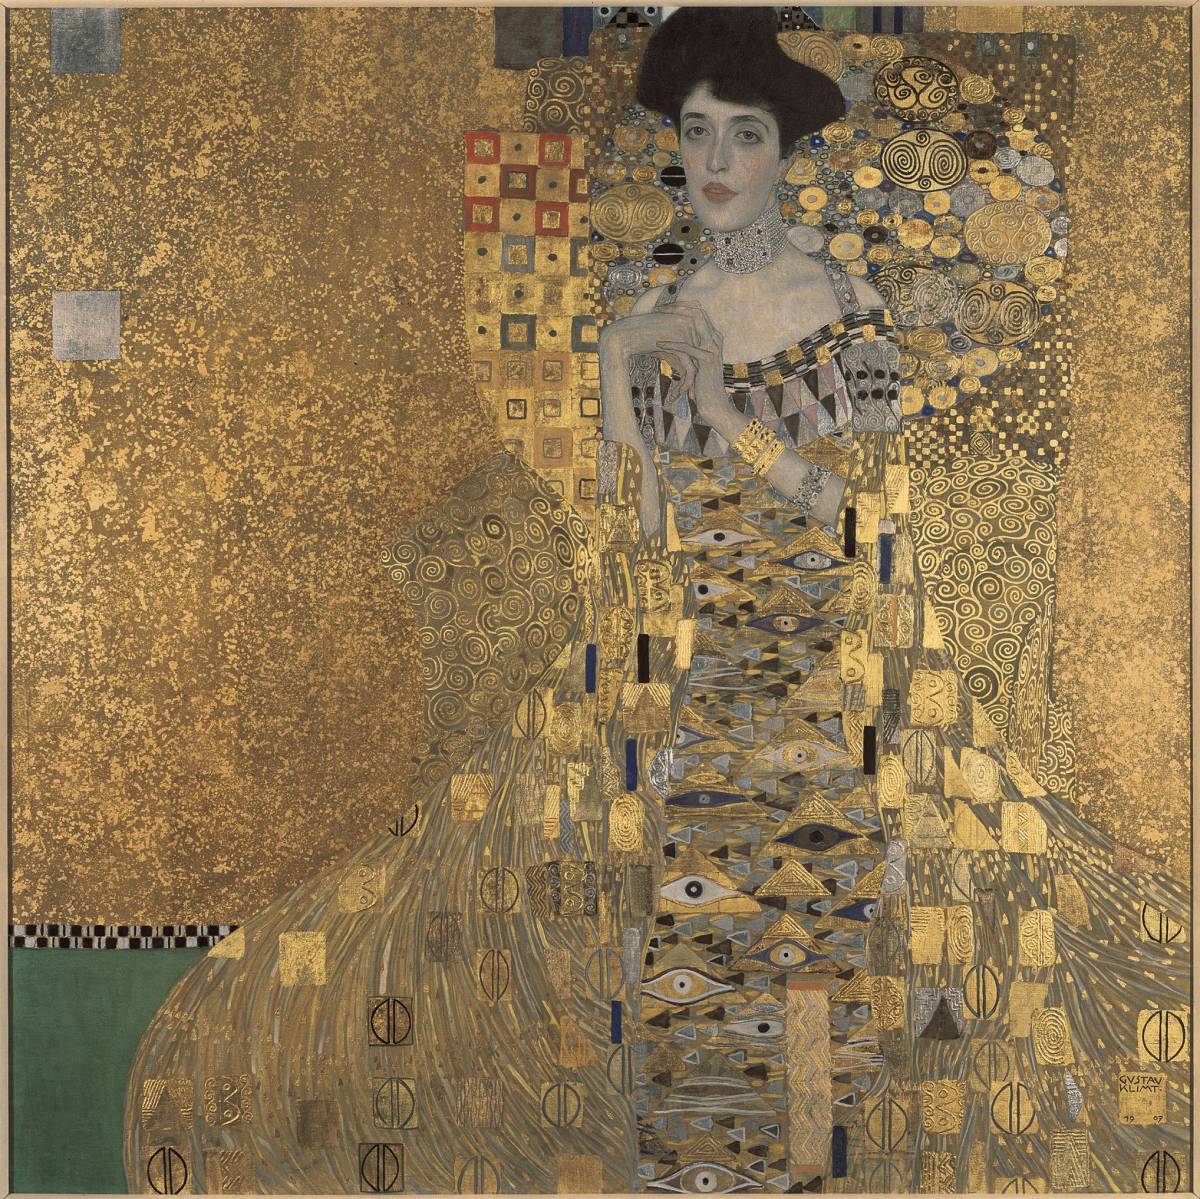 Tout neuf, sans cadre, Portrait d'Adèle Bloch-Bauer de Klimt, impression de haute qualité selon une technique spéciale, Format A4, prix spécial 980 yens (frais de port inclus), Achetez-le maintenant, Ouvrages d'art, Peinture, autres